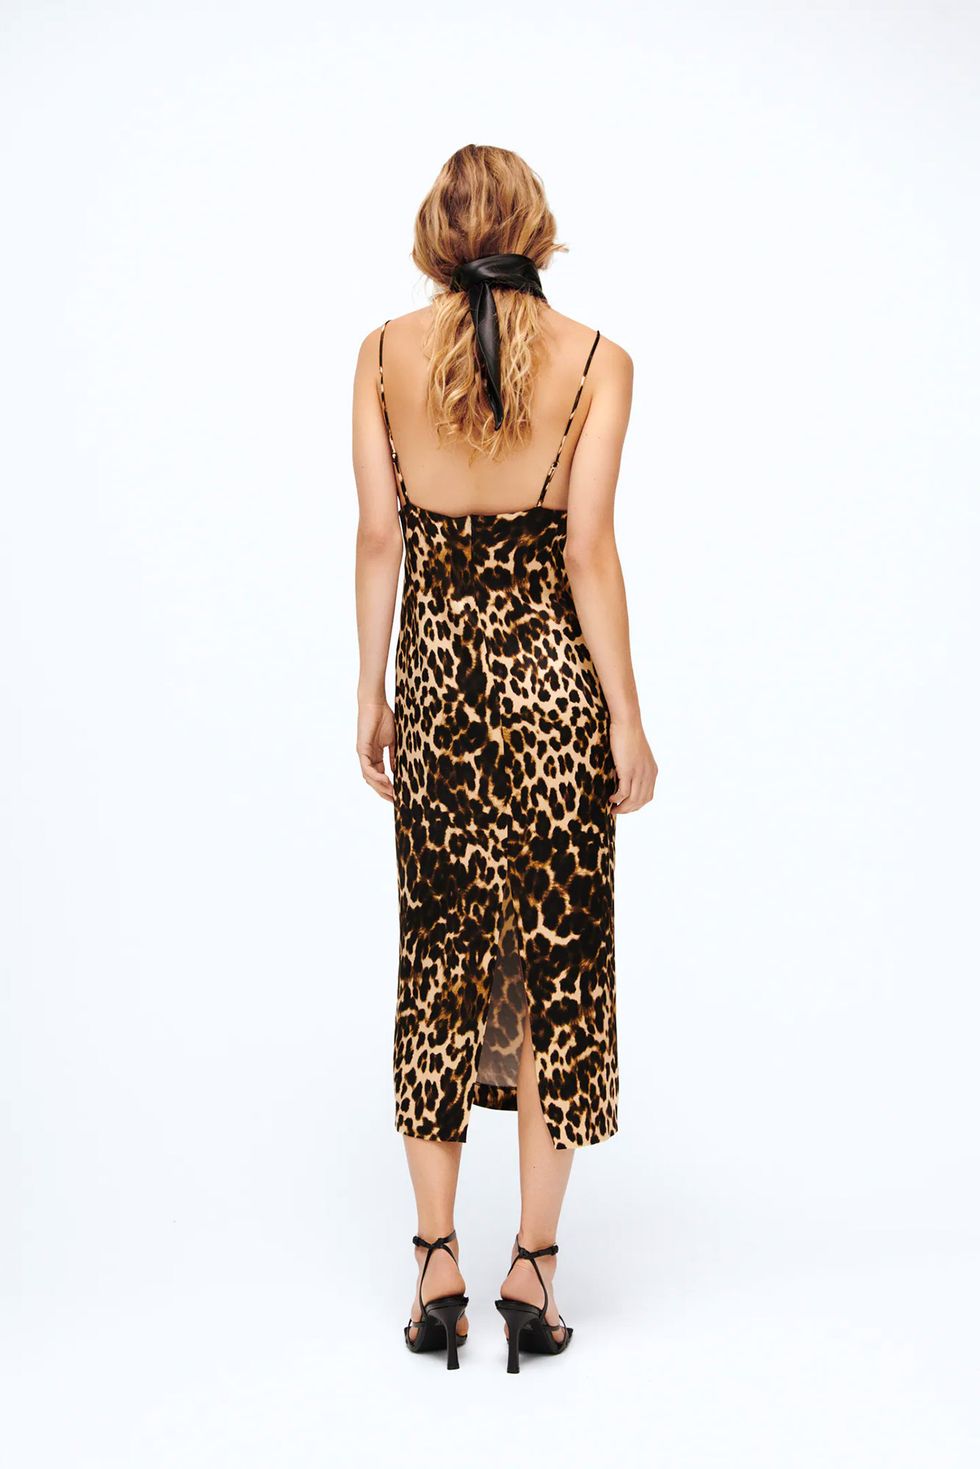 el 'staff' de Zara ha este vestido de leopardo